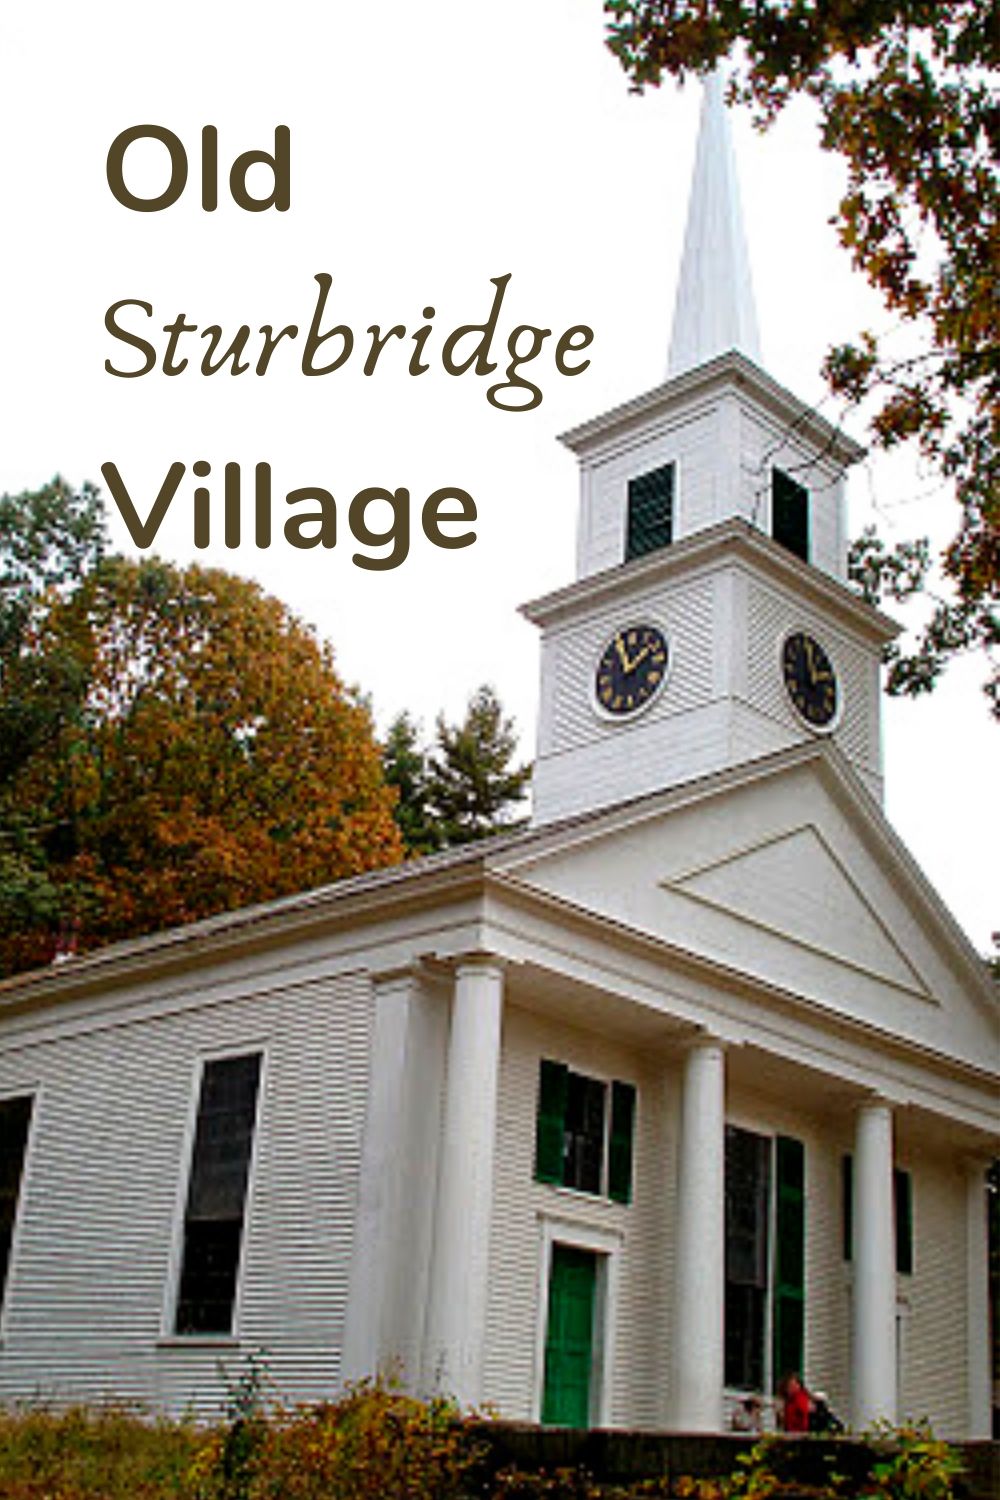 Old Sturbridge Village in Massachusetts